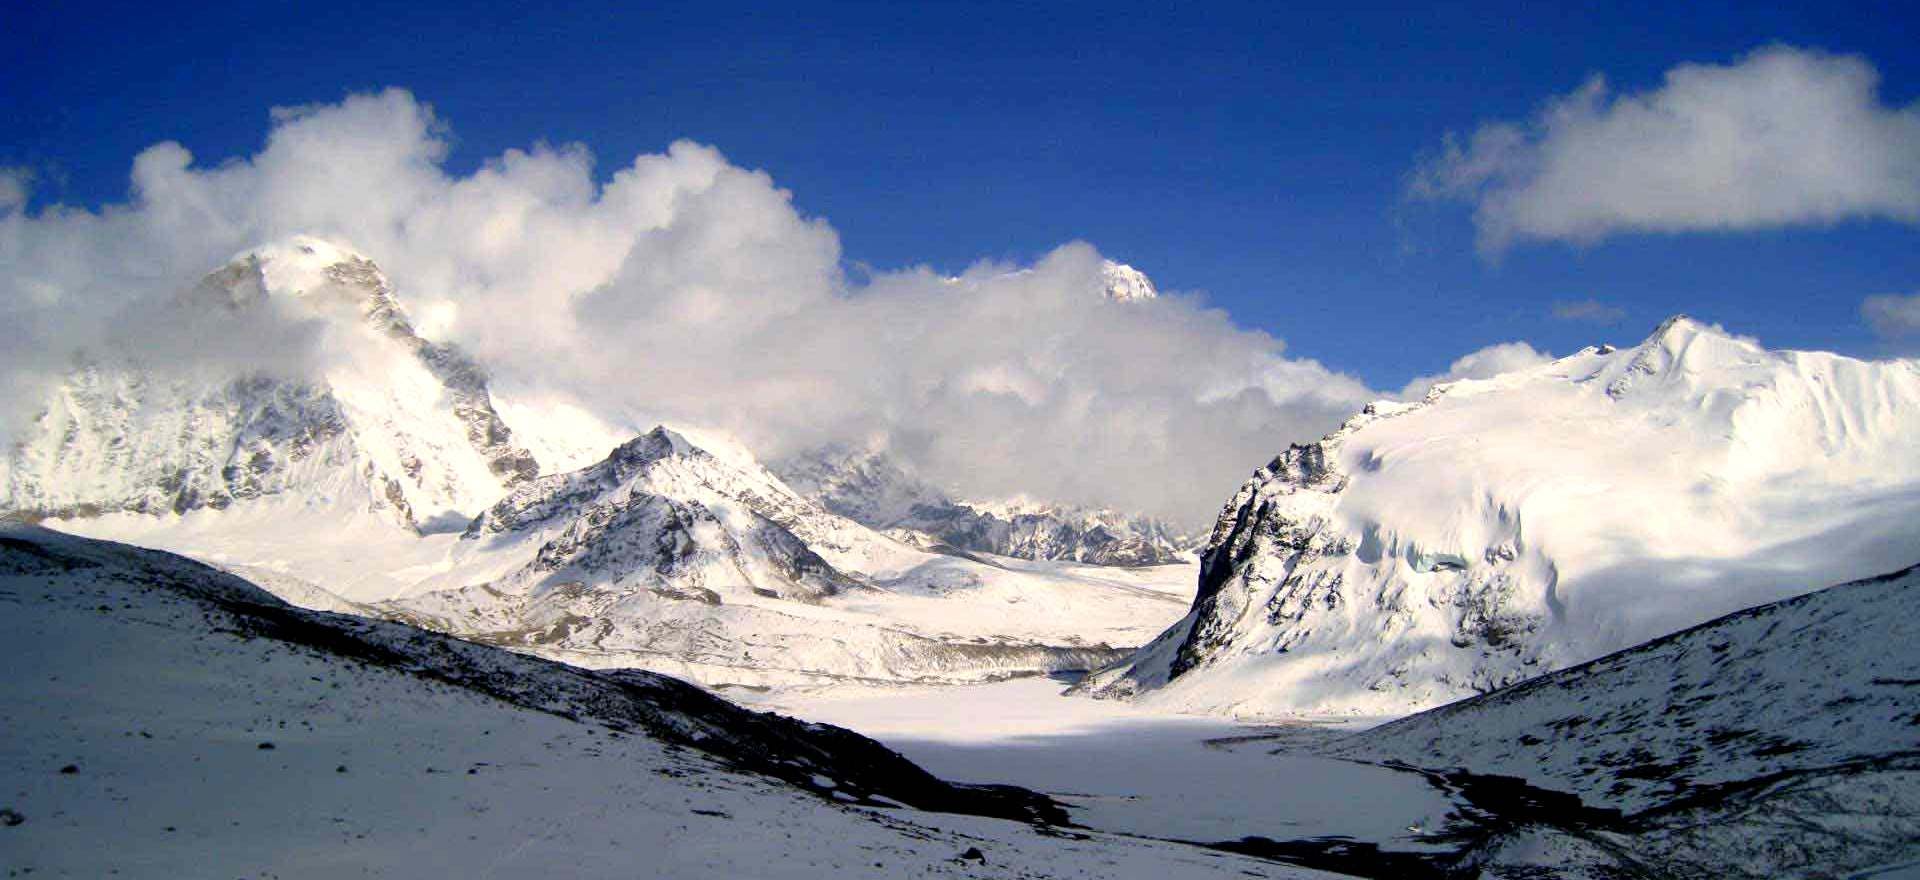 7000 meter Peaks in Nepal